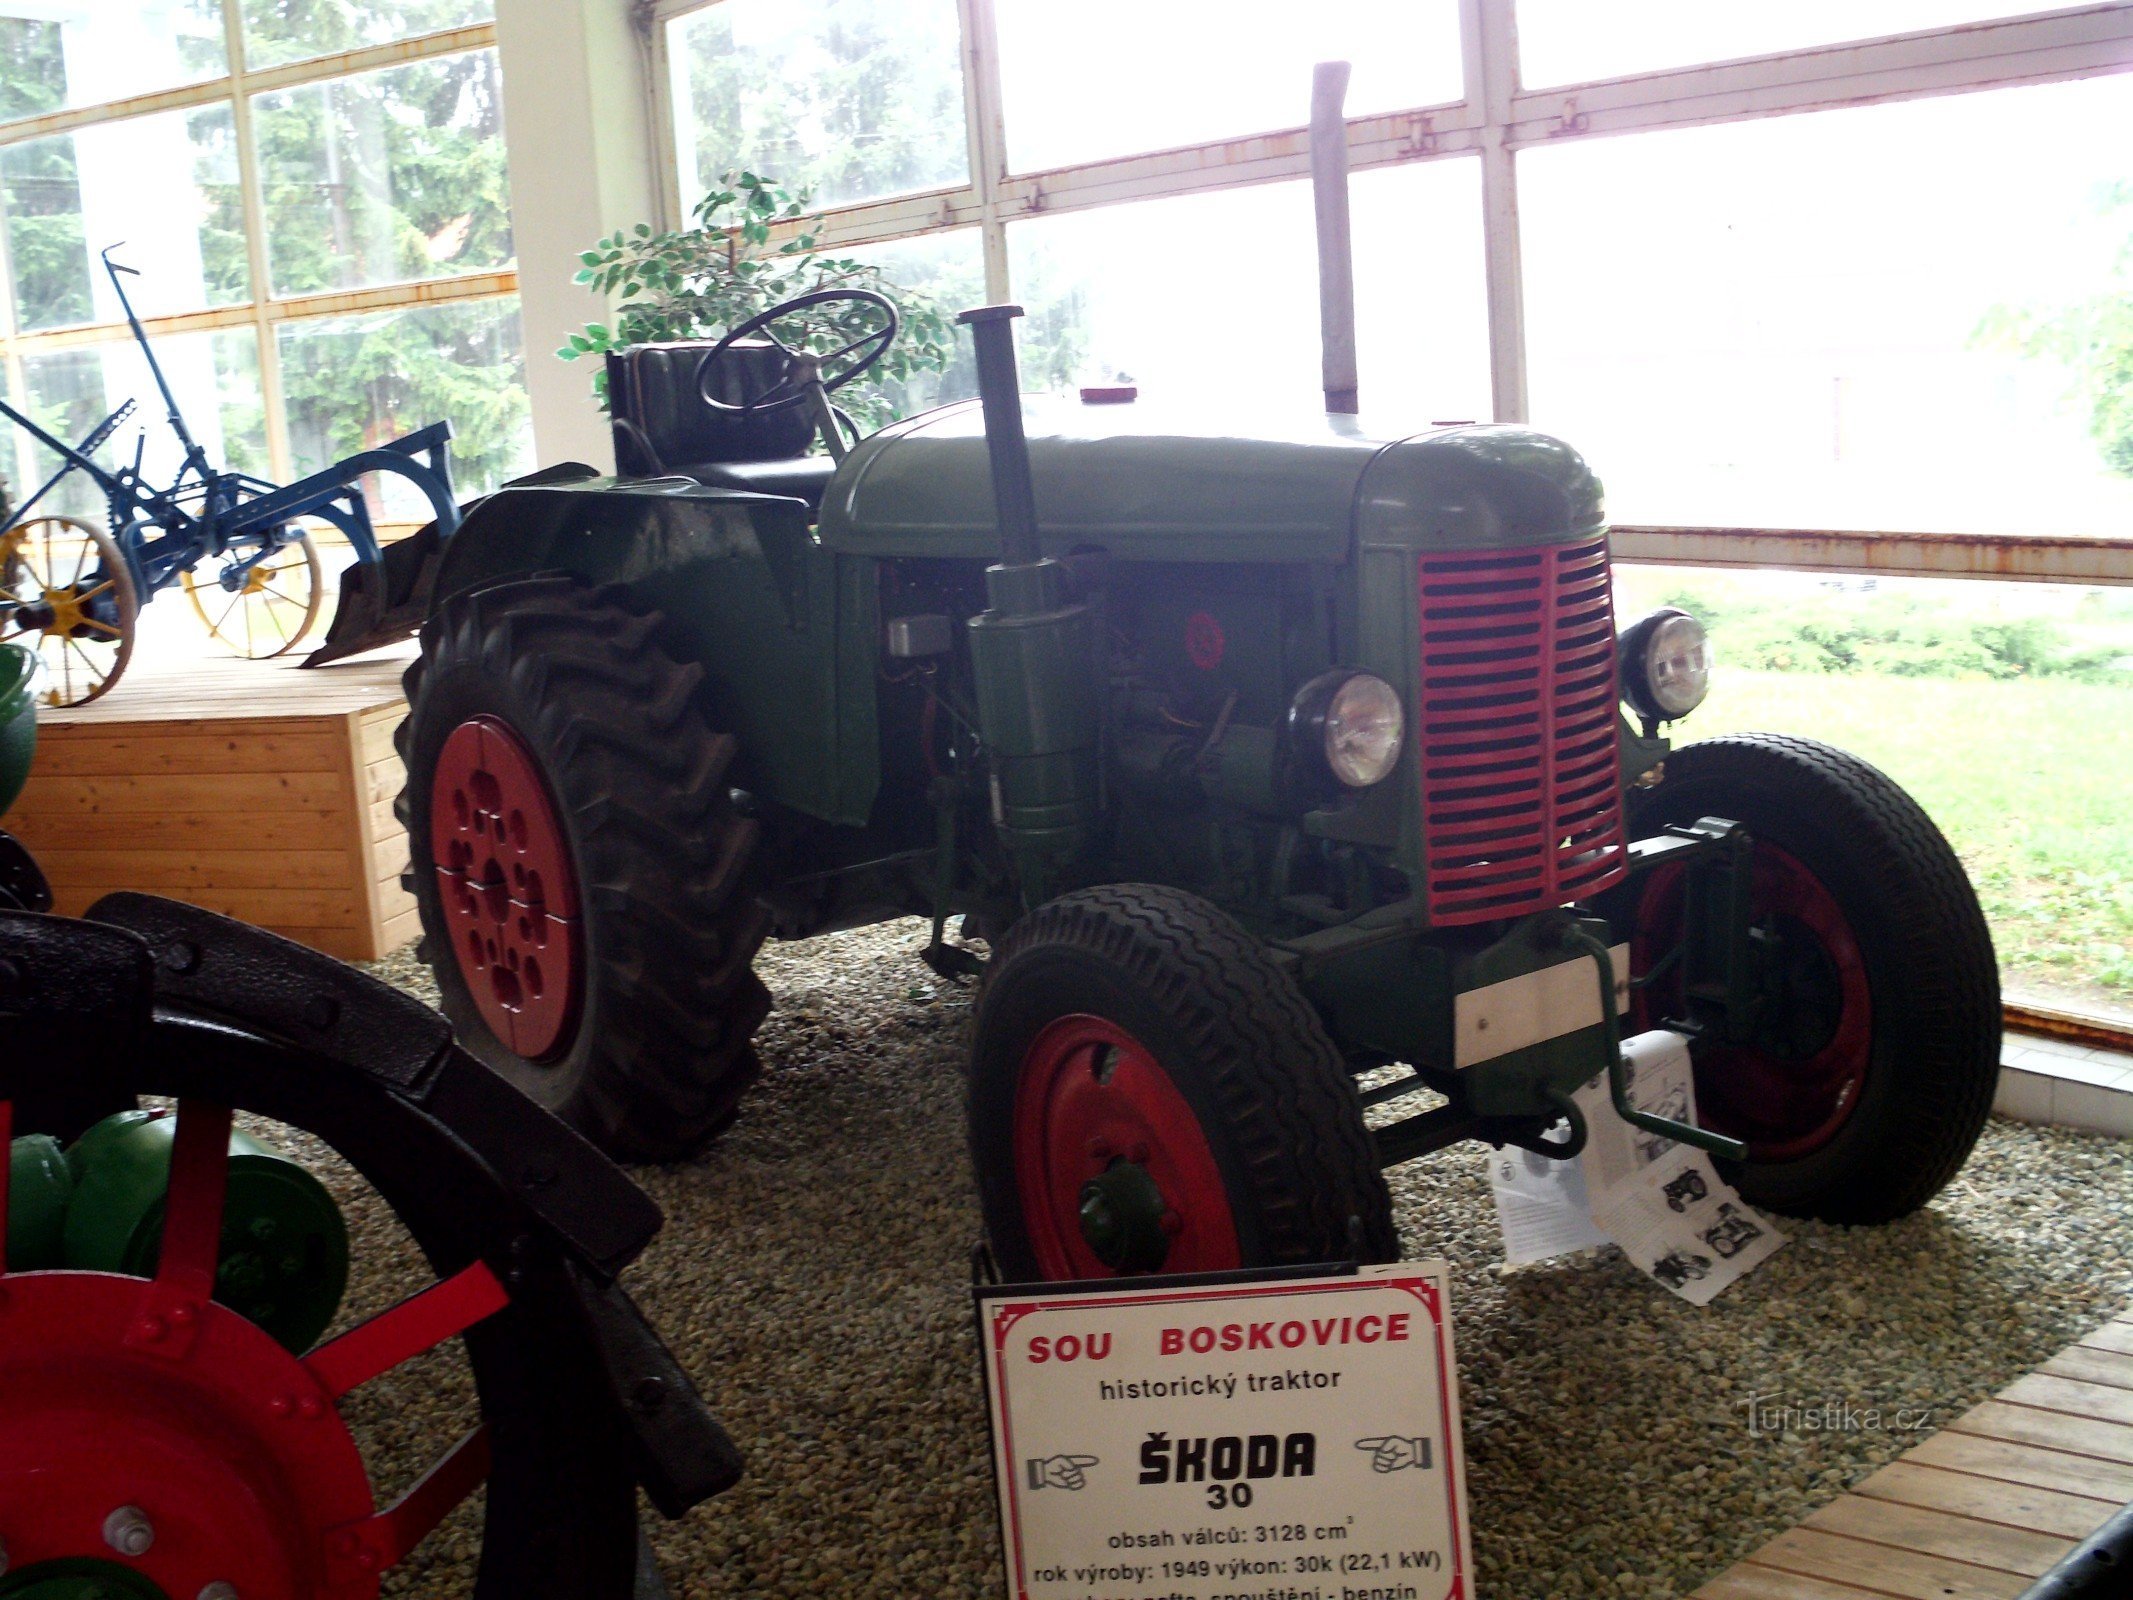 O trator Škoda 30 foi importante durante a coletivização da agricultura após a Segunda Guerra Mundial. guerra Mundial.